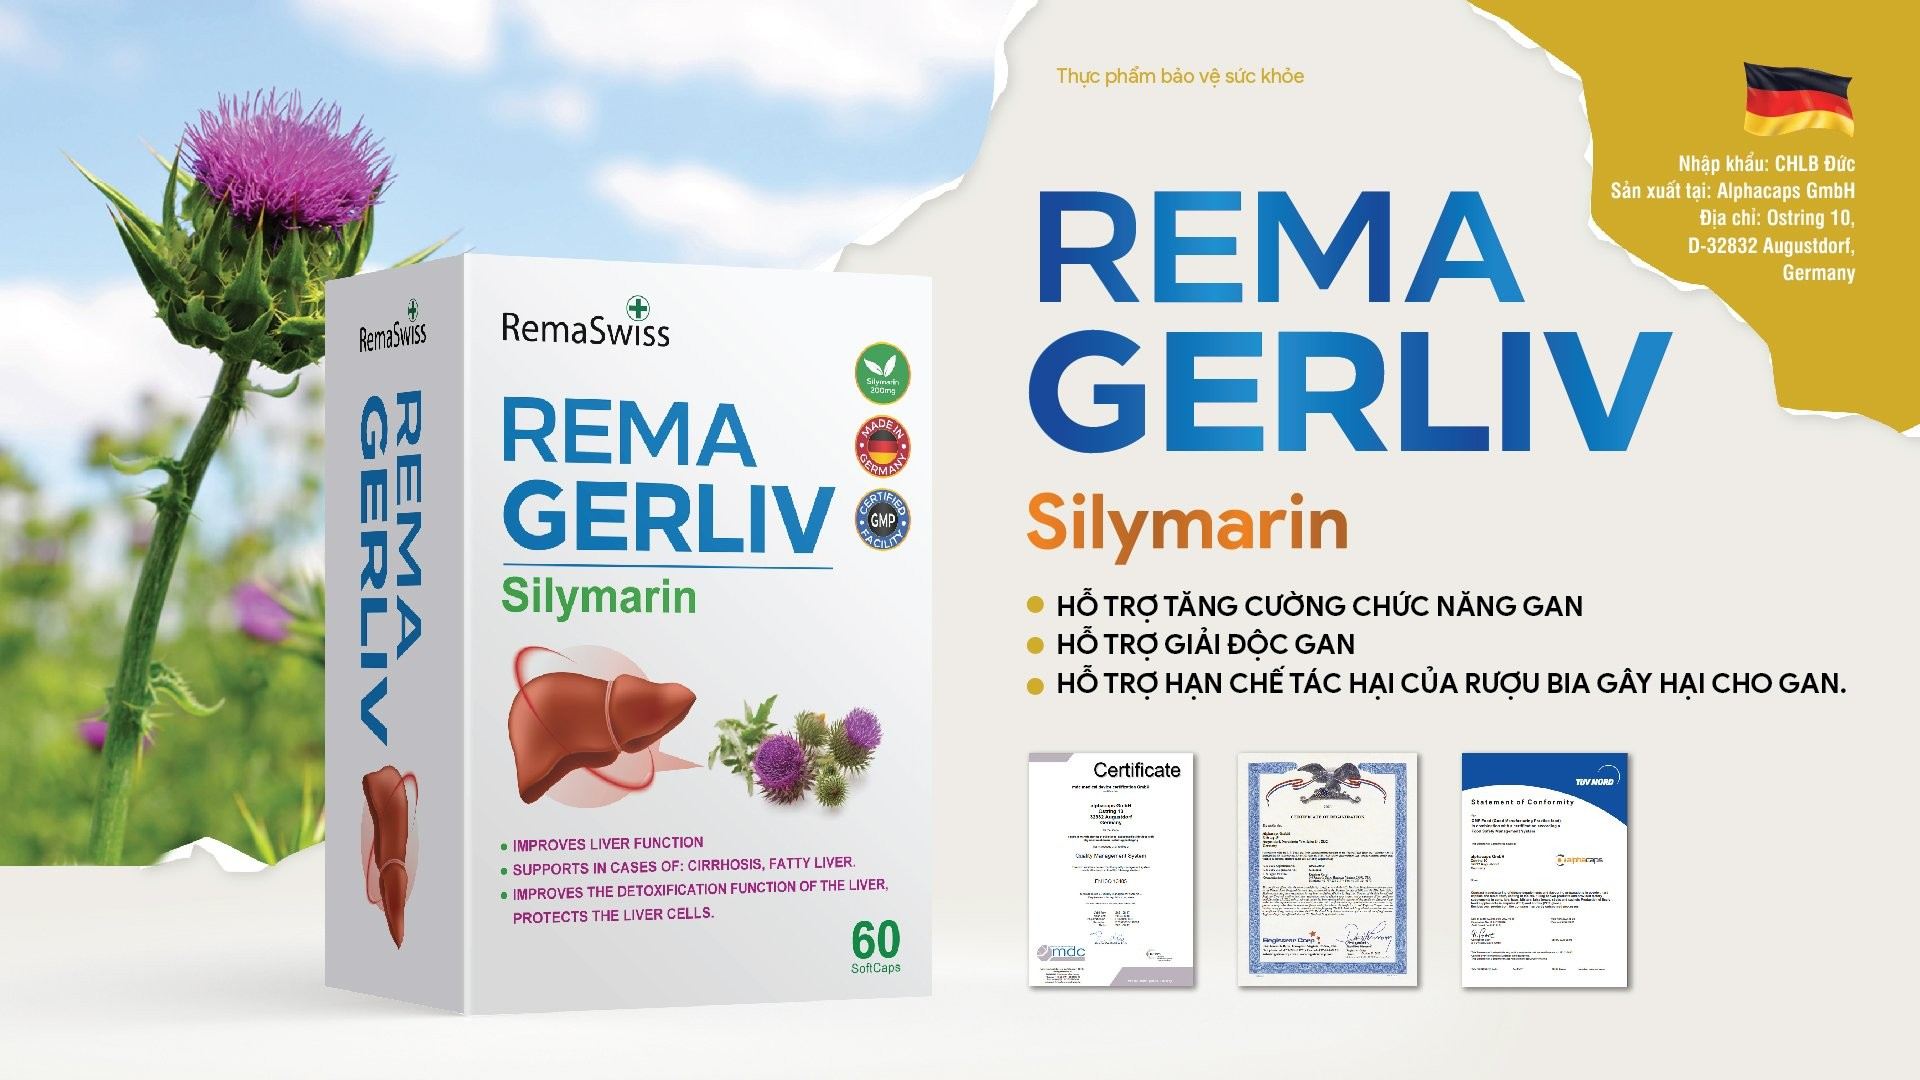 Chuyên gia cảnh báo thói quen xấu ảnh hưởng tới gan, dùng ngay Rema Gerliv - 4